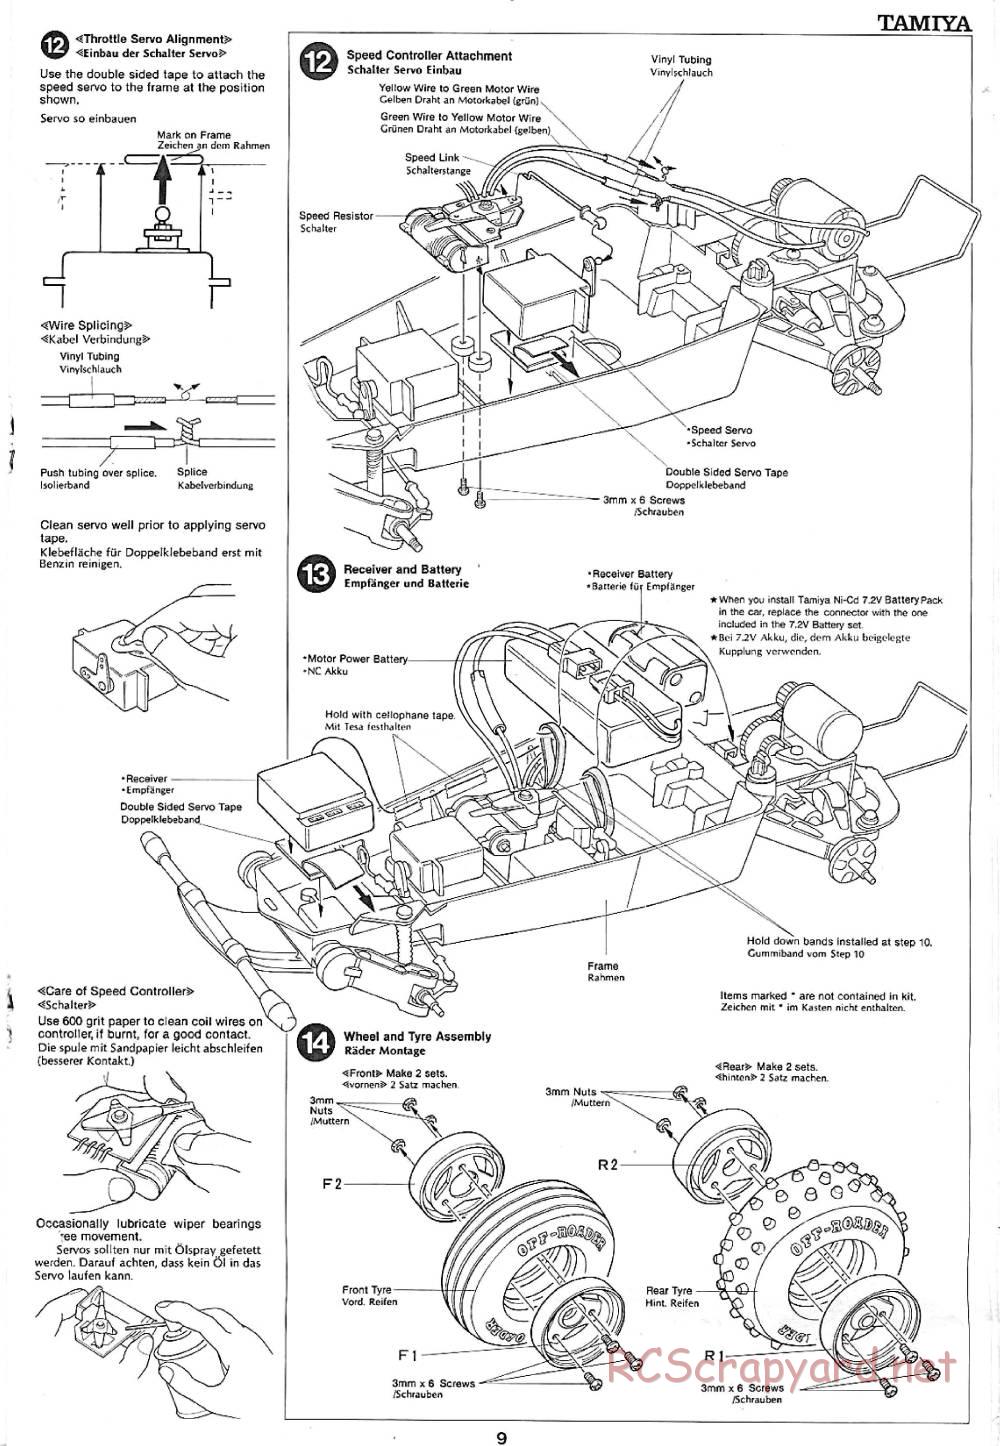 Tamiya - Sand Rover - 58024 - Manual - Page 9